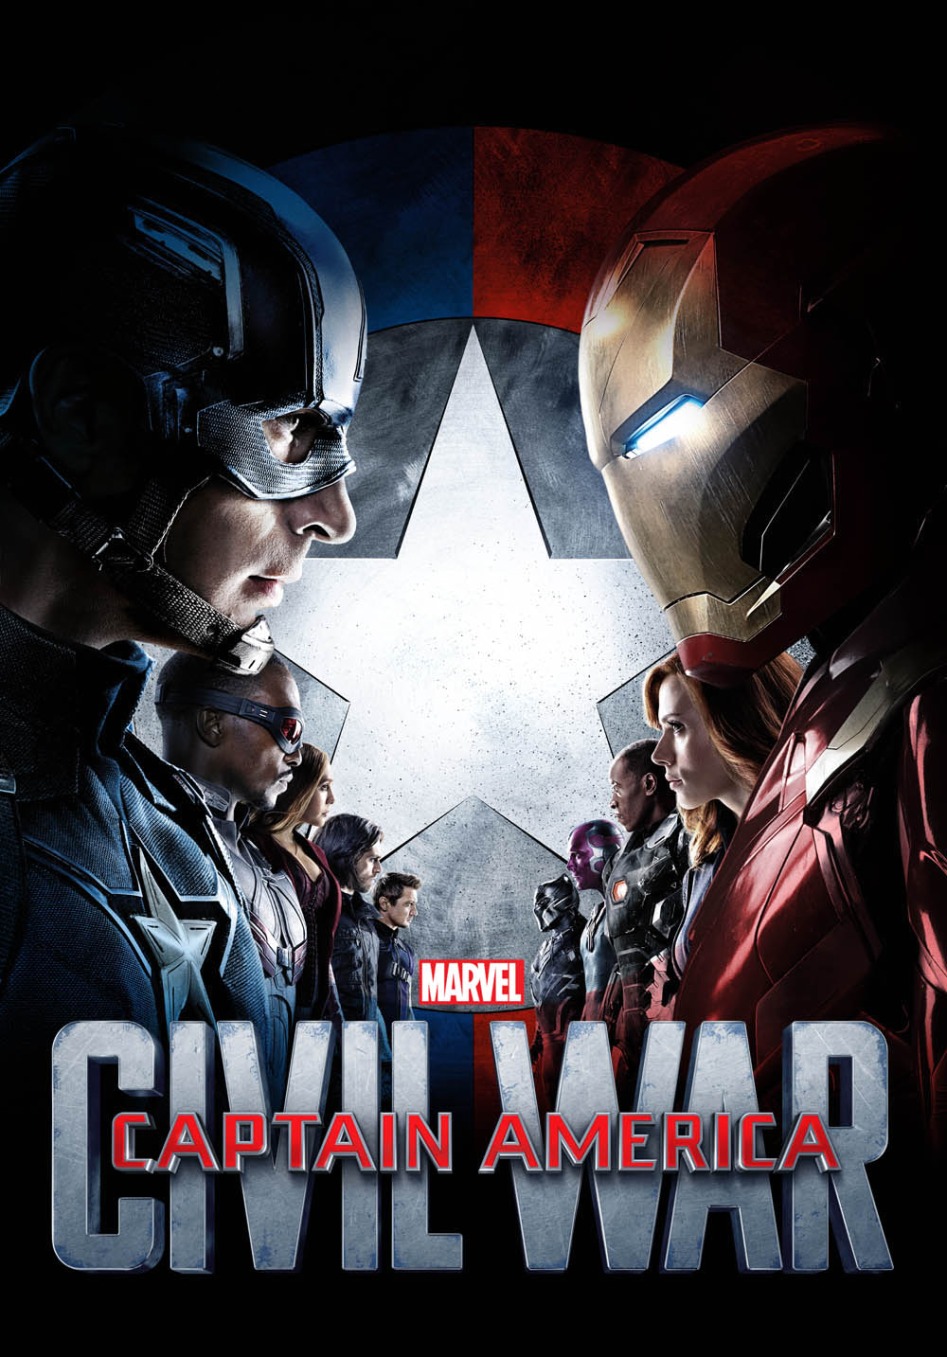 Marvel-Civil-War-alternate-poster.jpg